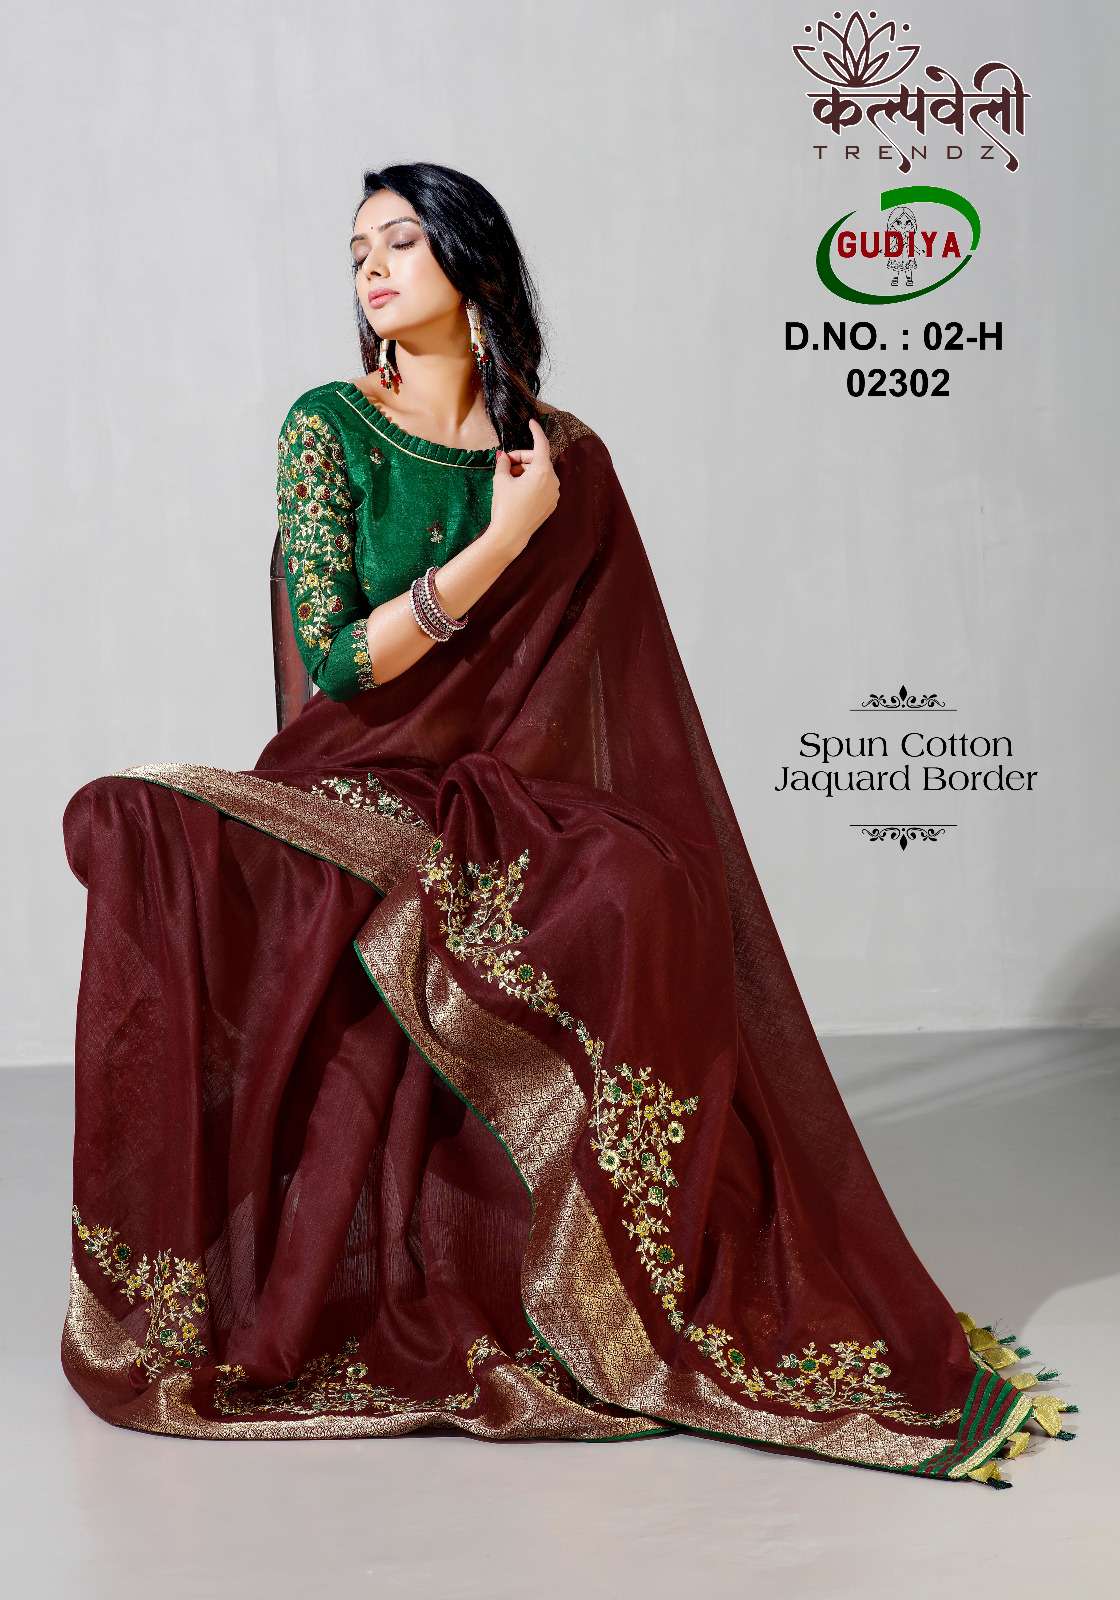 kalpavelly trendz gudiya 02 design spun cotton sarees